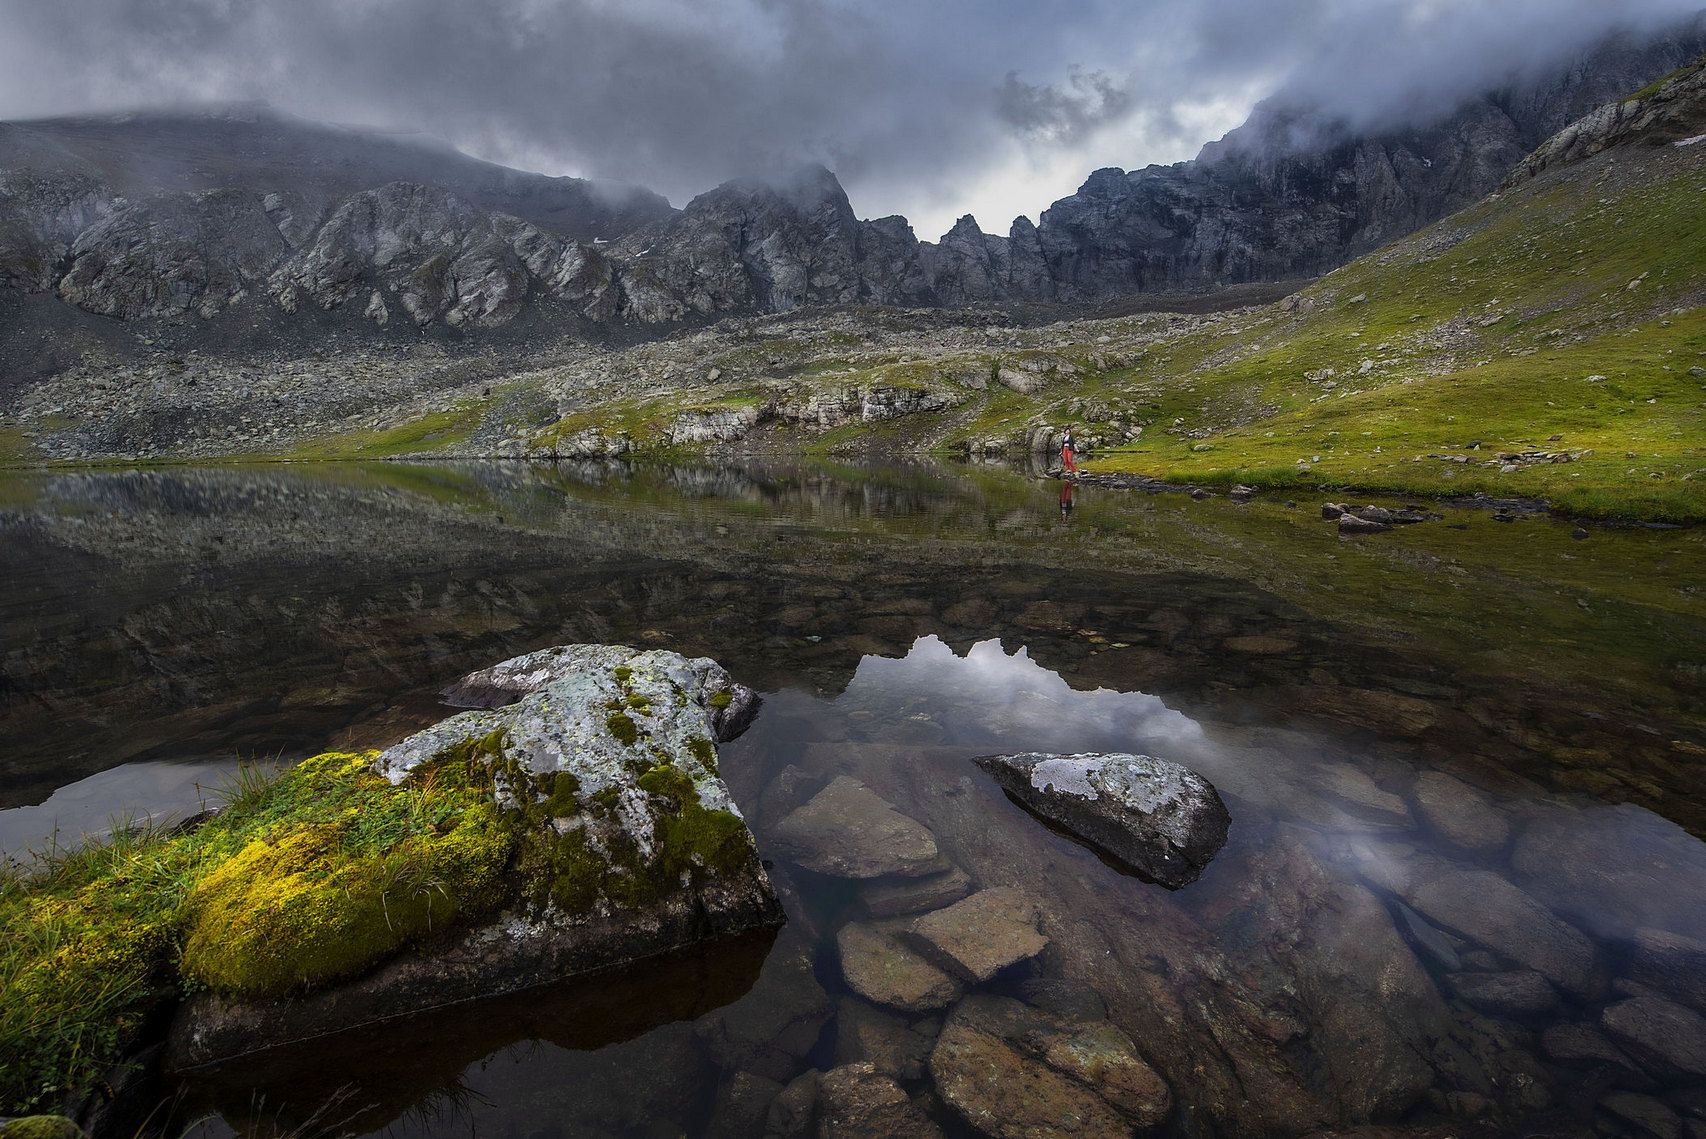  Горы  пейзаж  озеро  туман  вода  камни  скалы  трава  прозрачность  отражение, Валерий Одинцов